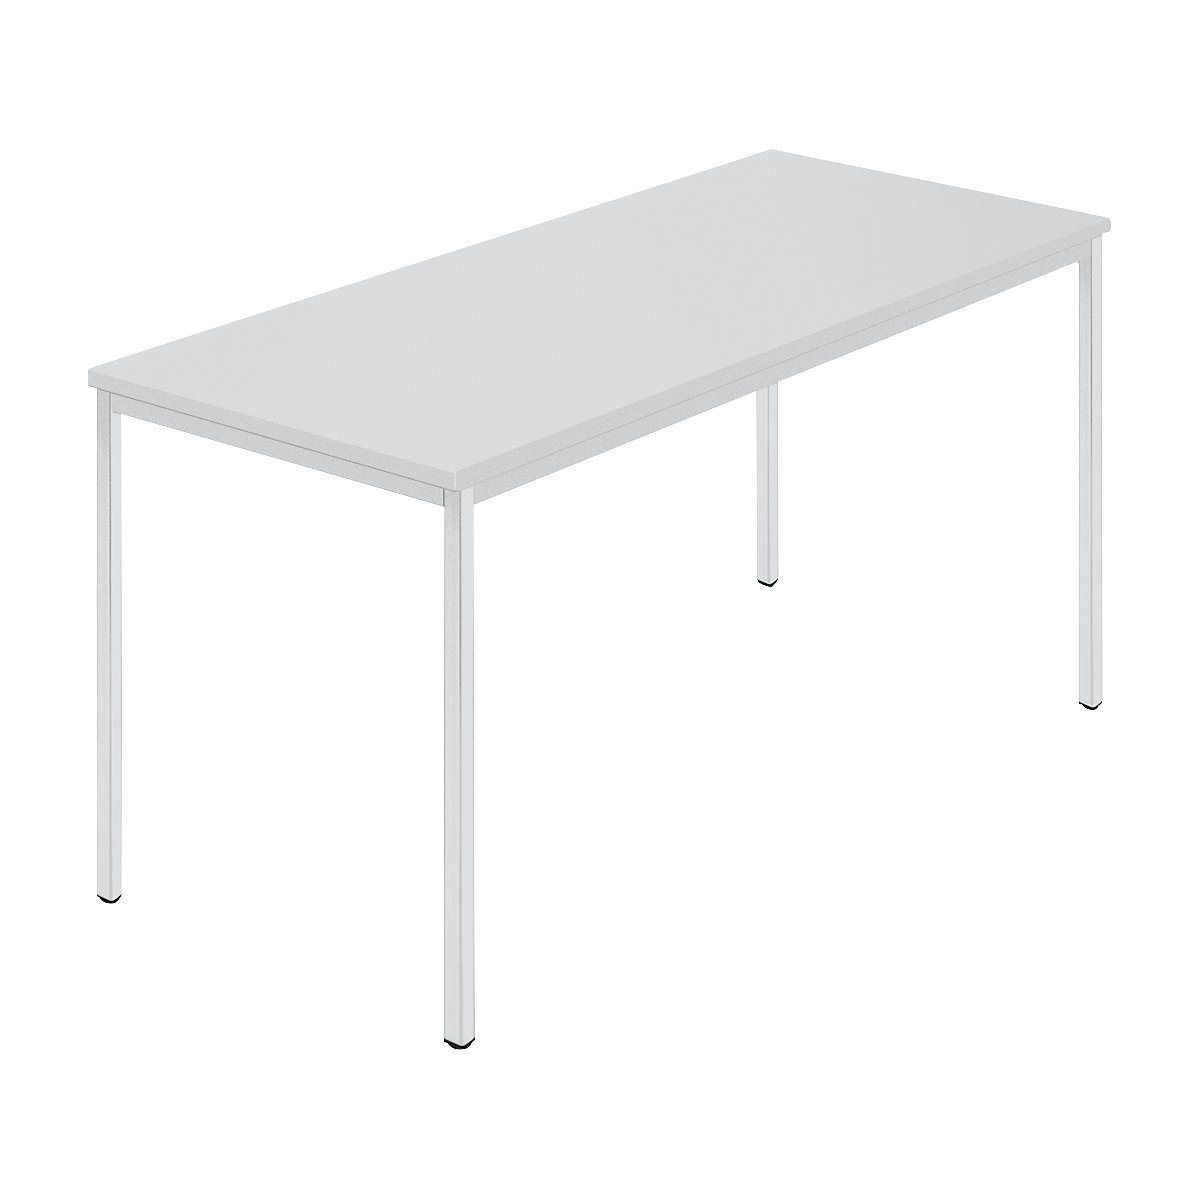 Rechthoekige tafel, vierkante buis met coating, b x d = 1400 x 700 mm, grijs / grijs-5